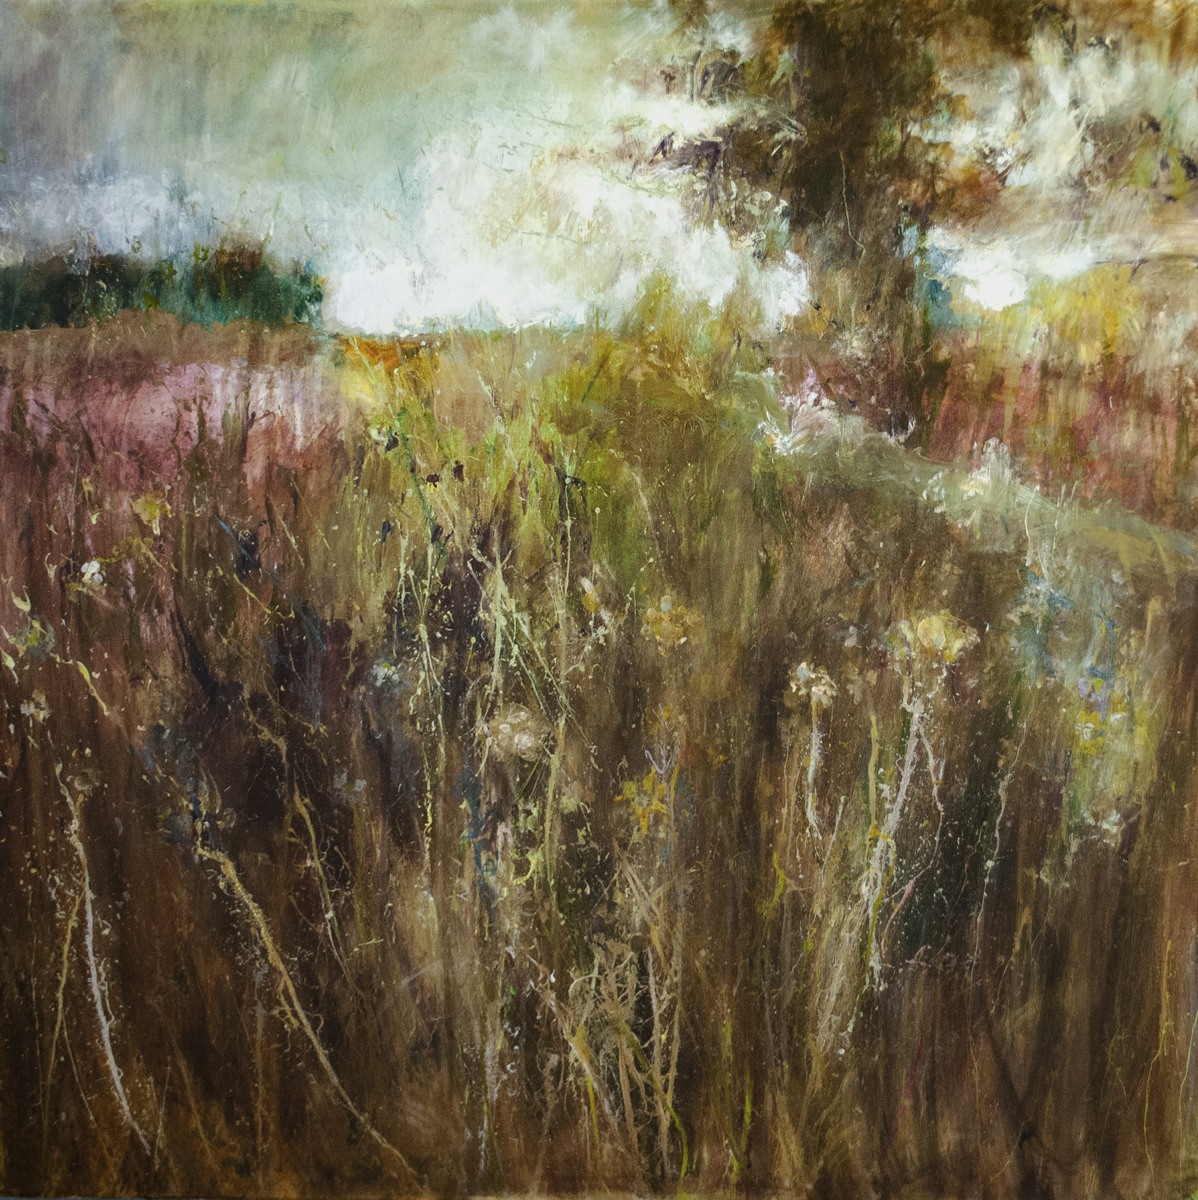 Meadow in a Downpour, by John McClenaghen